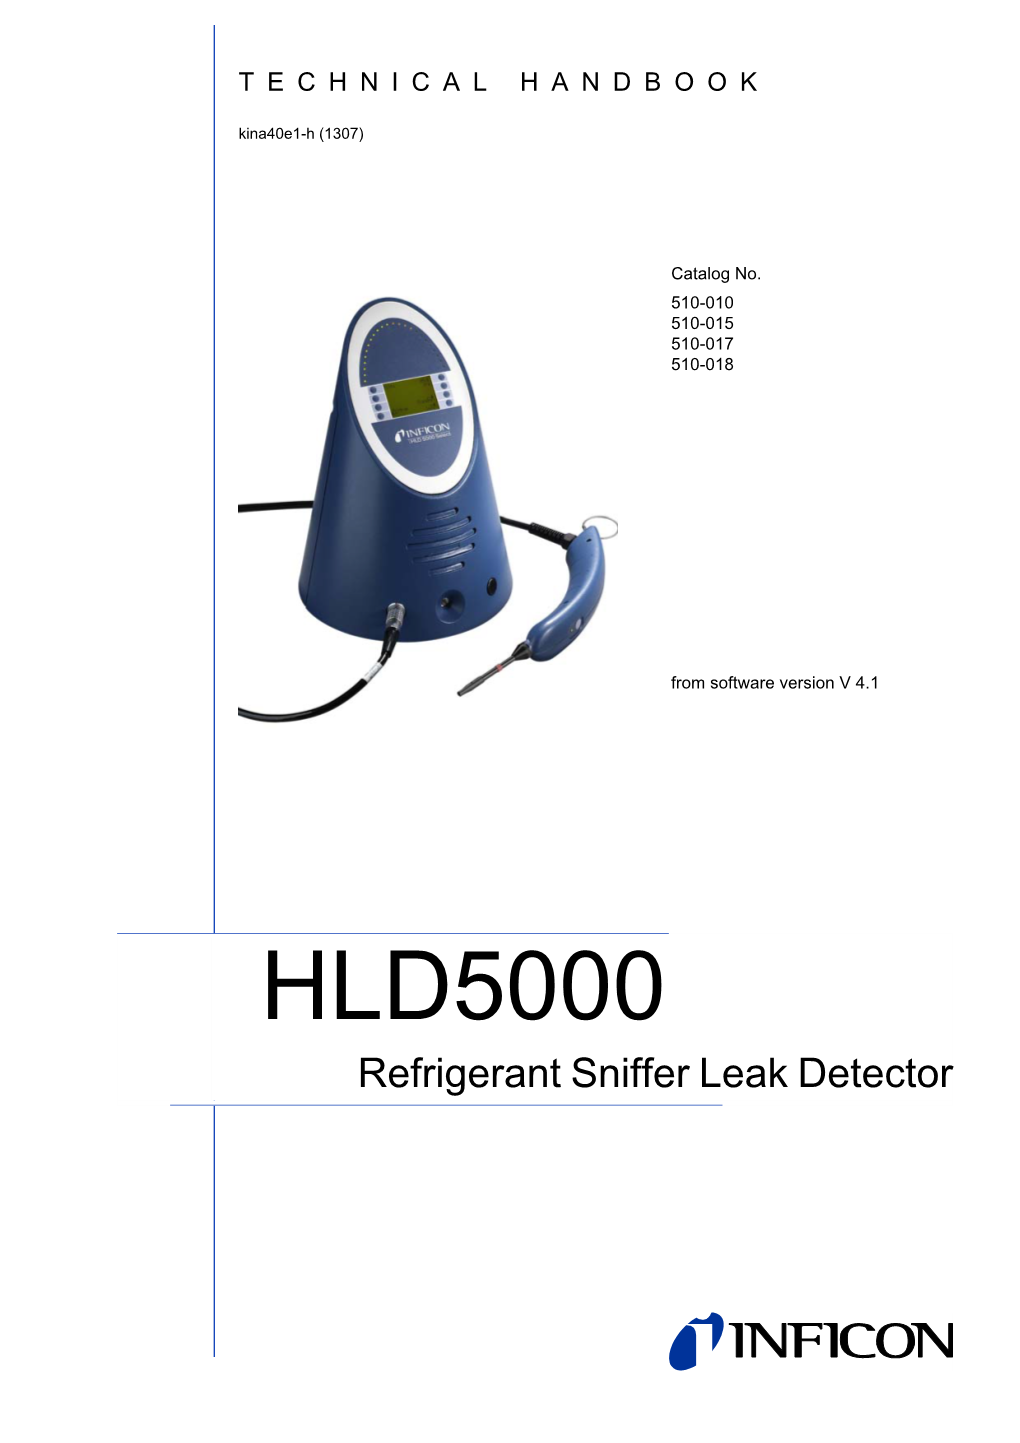 HLD5000 Refrigerant Sniffer Leak Detector Technical Handbook Technical (1307) Kina40e IVZ.Fm